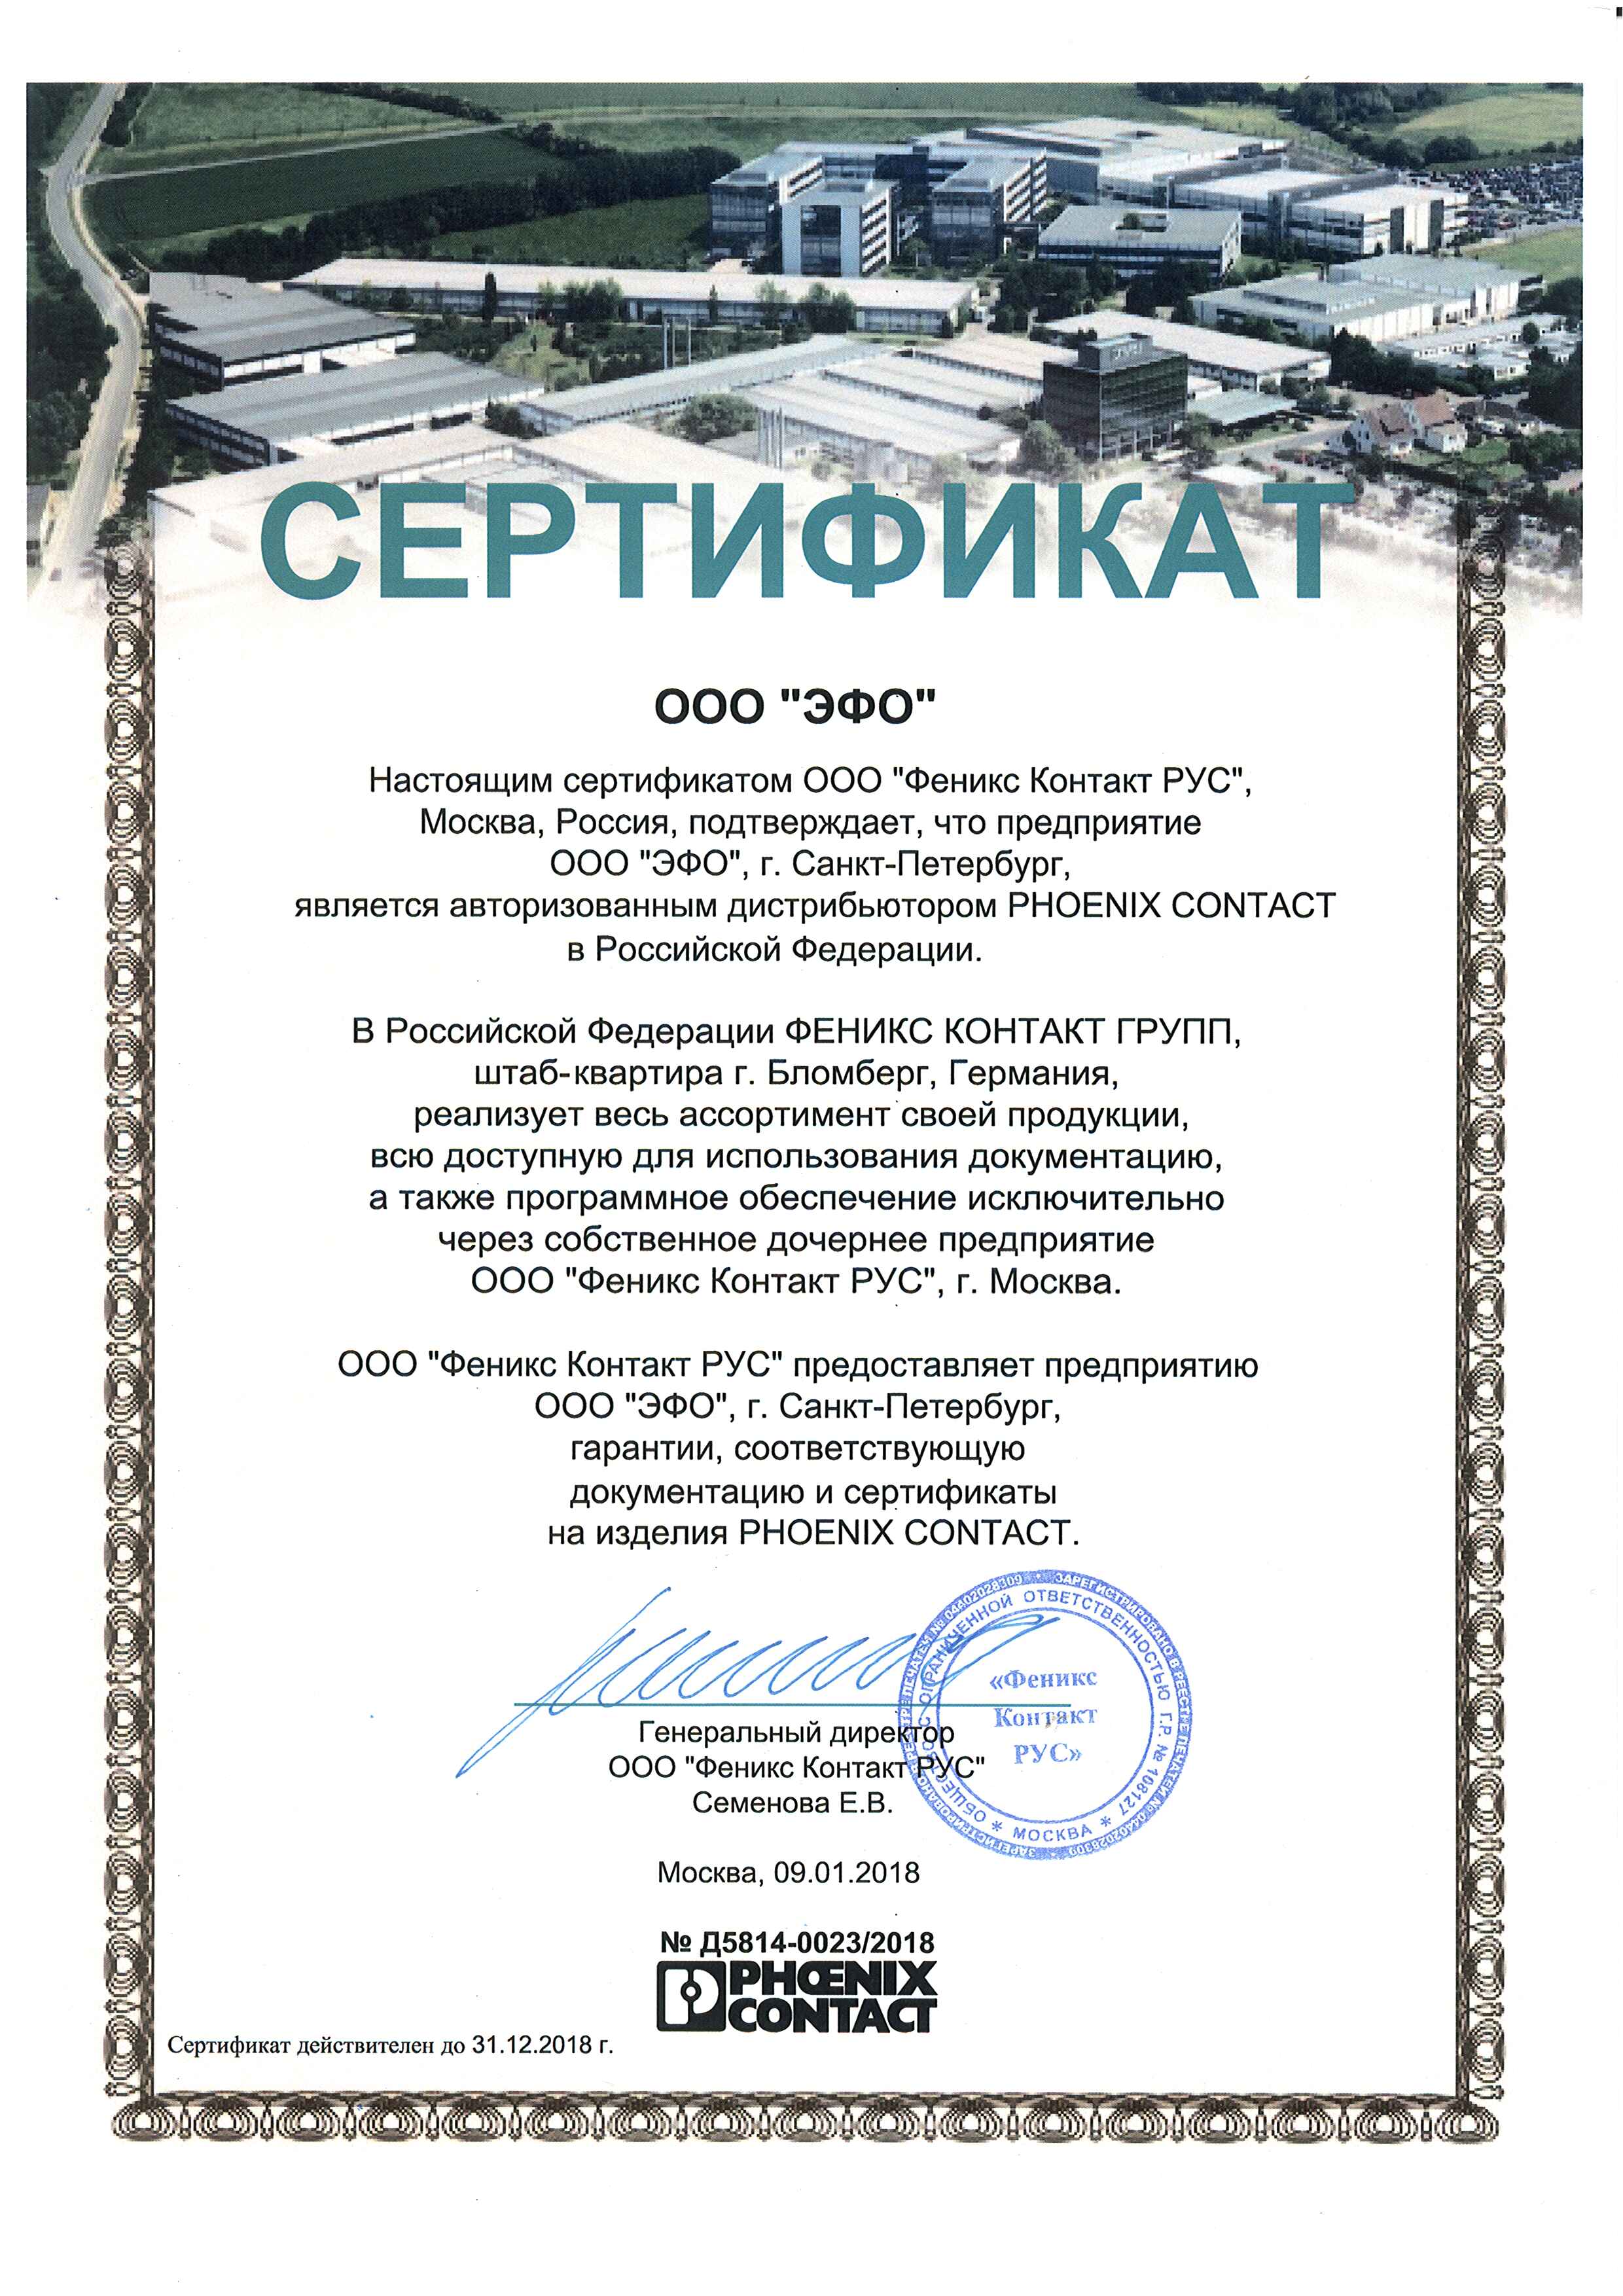 Сертификат дистрибьютора Phoenix Contact